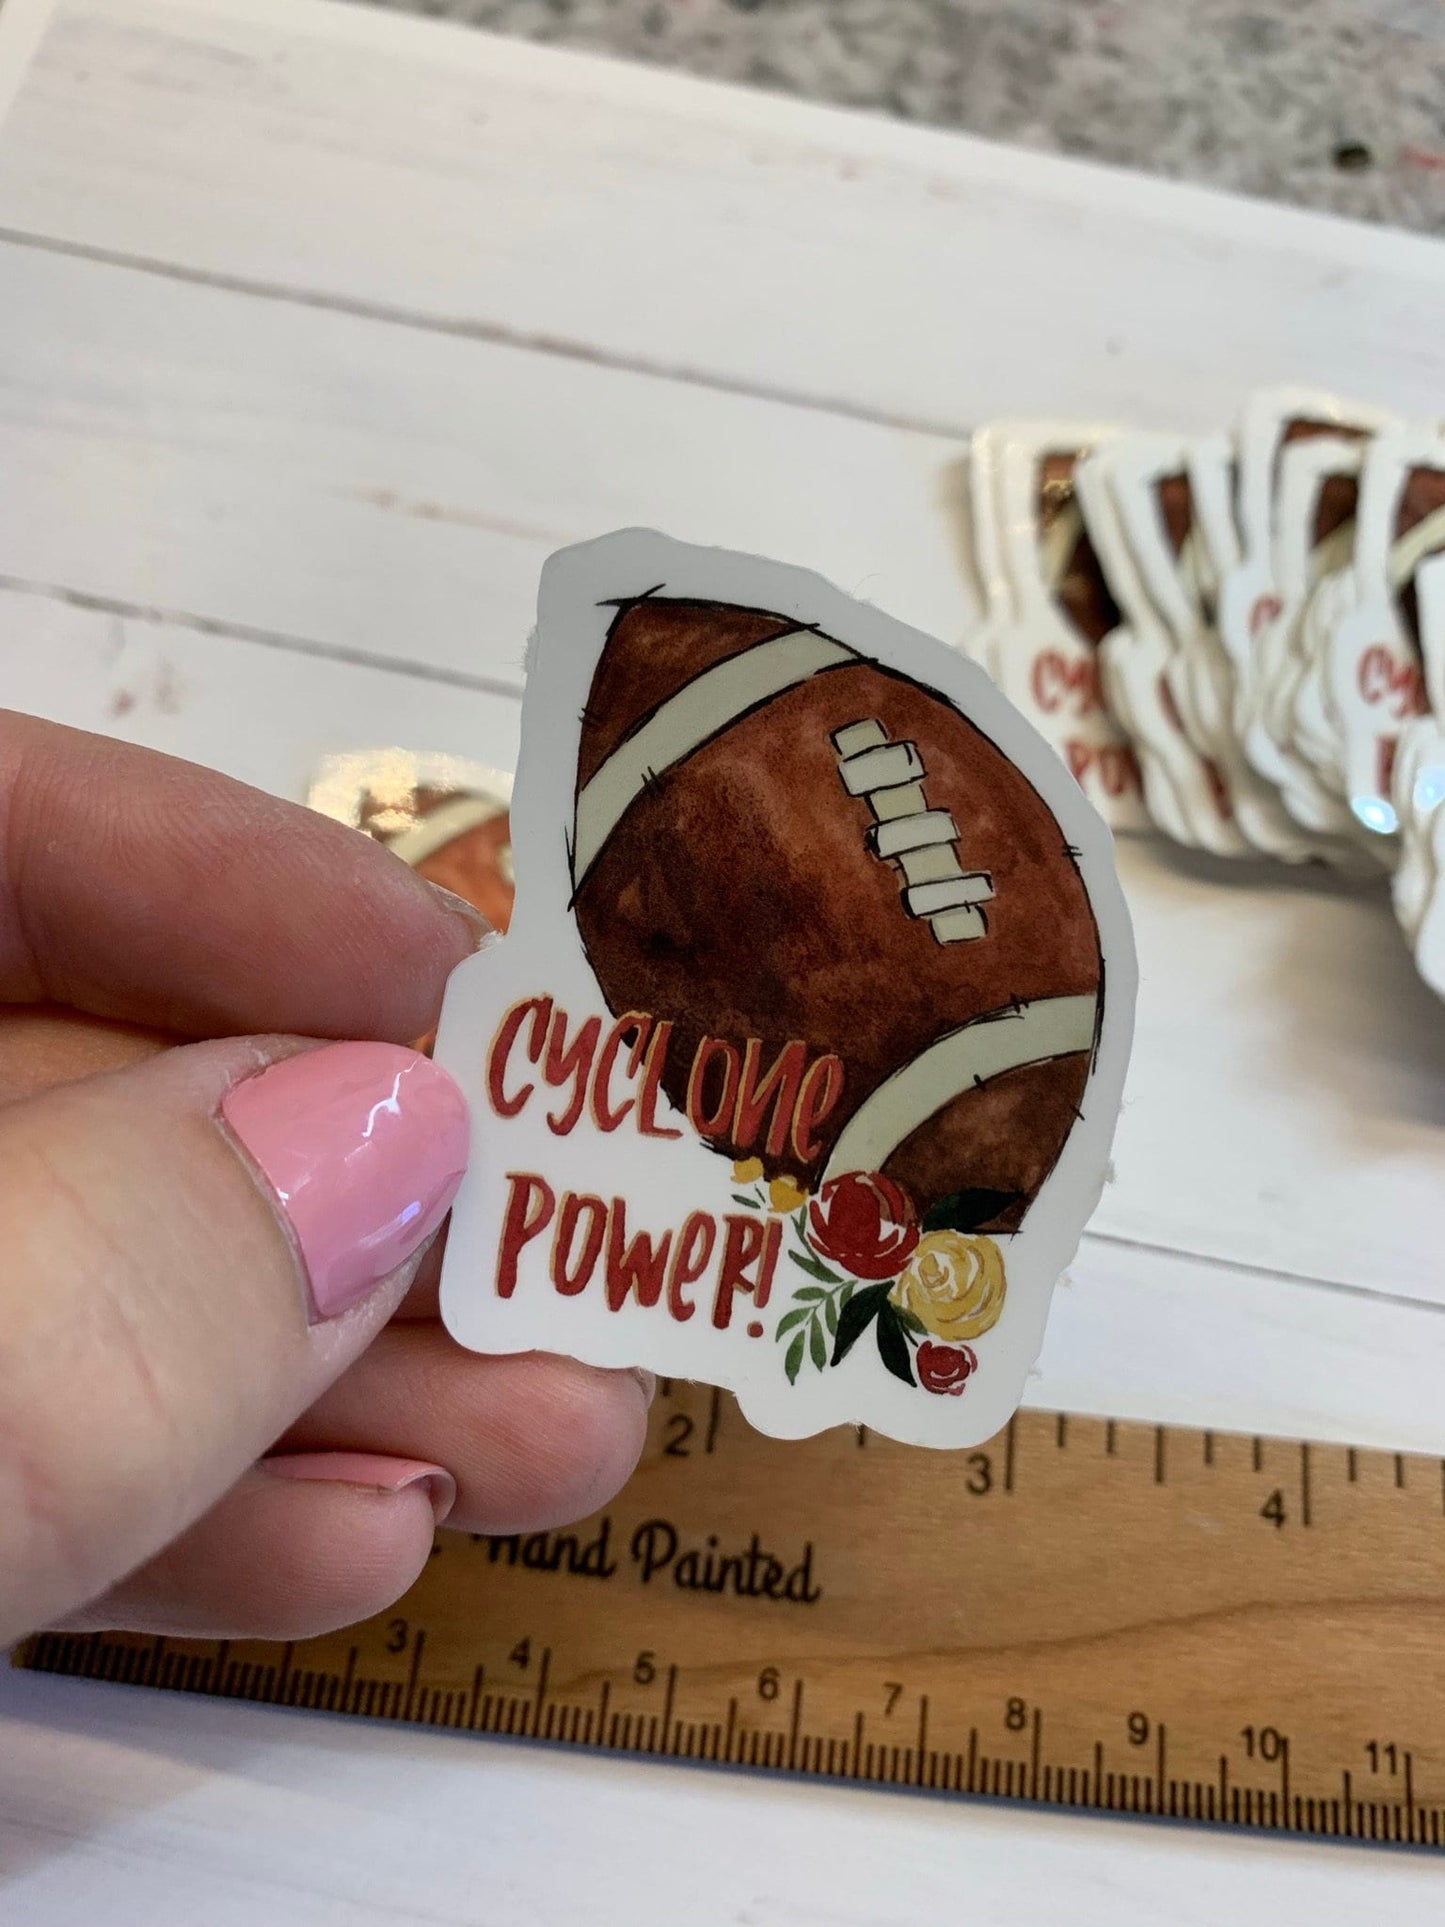 Watercolor Cyclones Power Iowa State Football Die Cut Vinyl Stickers